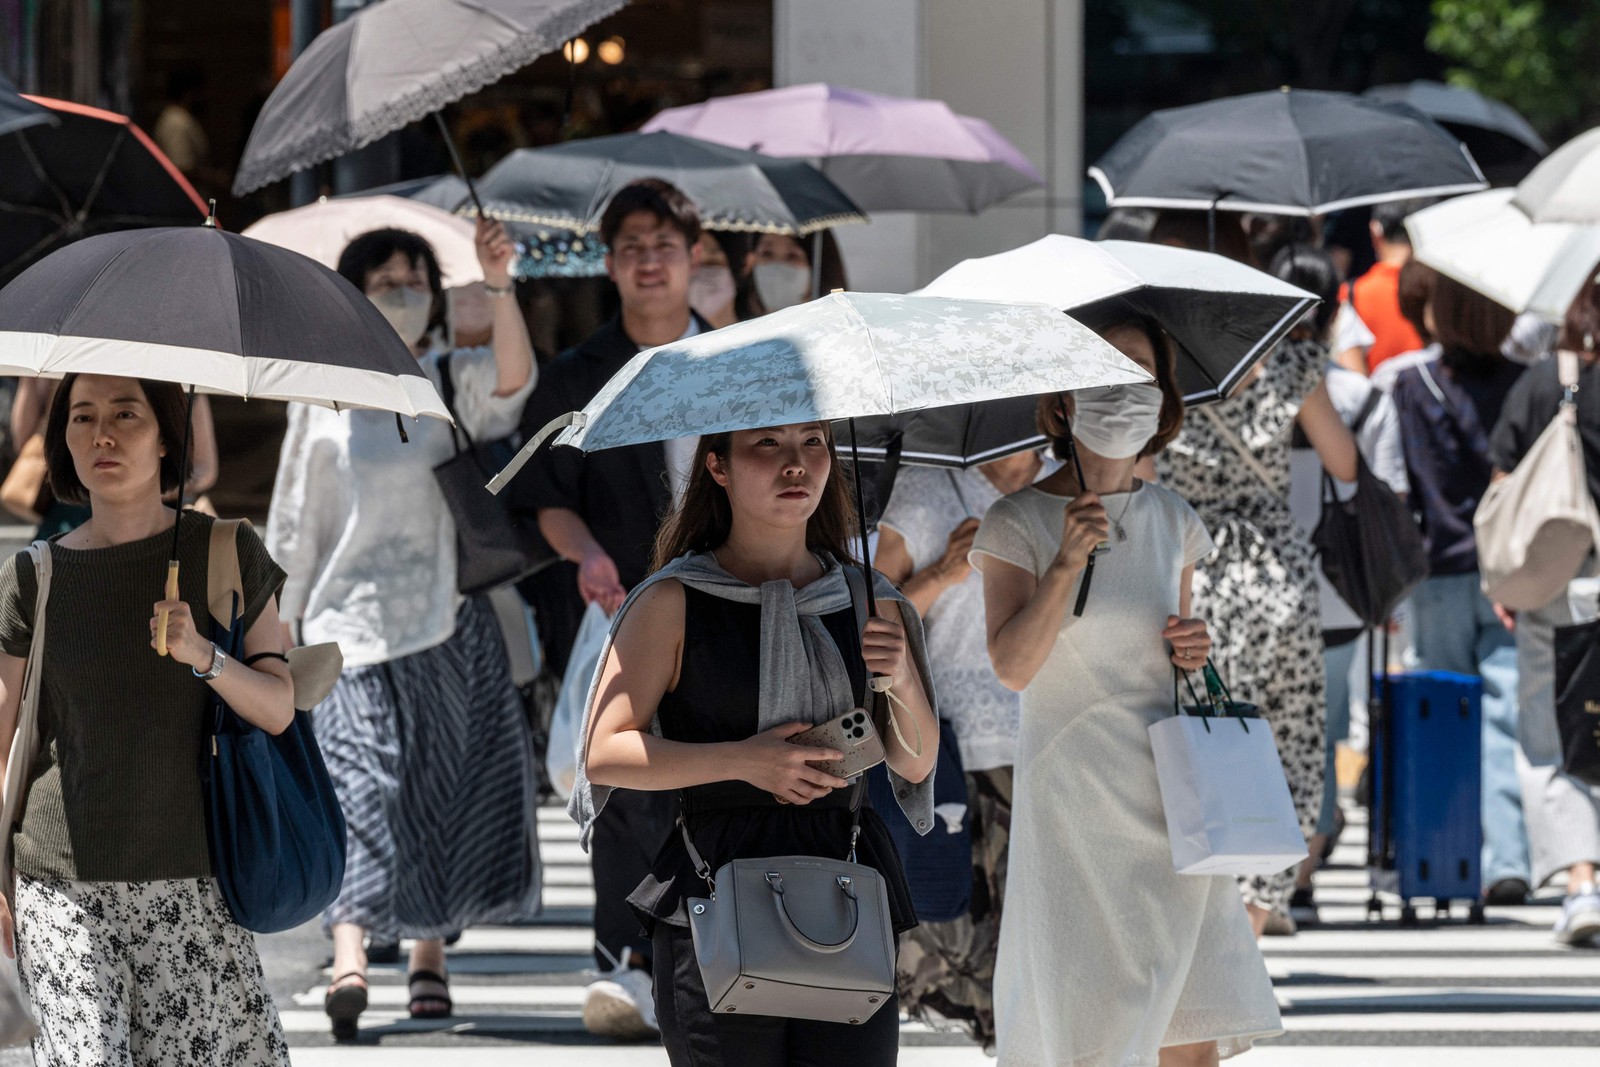 Pedestres atravessam rua no centro de Tóquio. O calor escaldante no Hemisfério Norte ameaçou quebrar recordes e provocar incêndios florestais — Foto: Richard A. Brooks / AFP